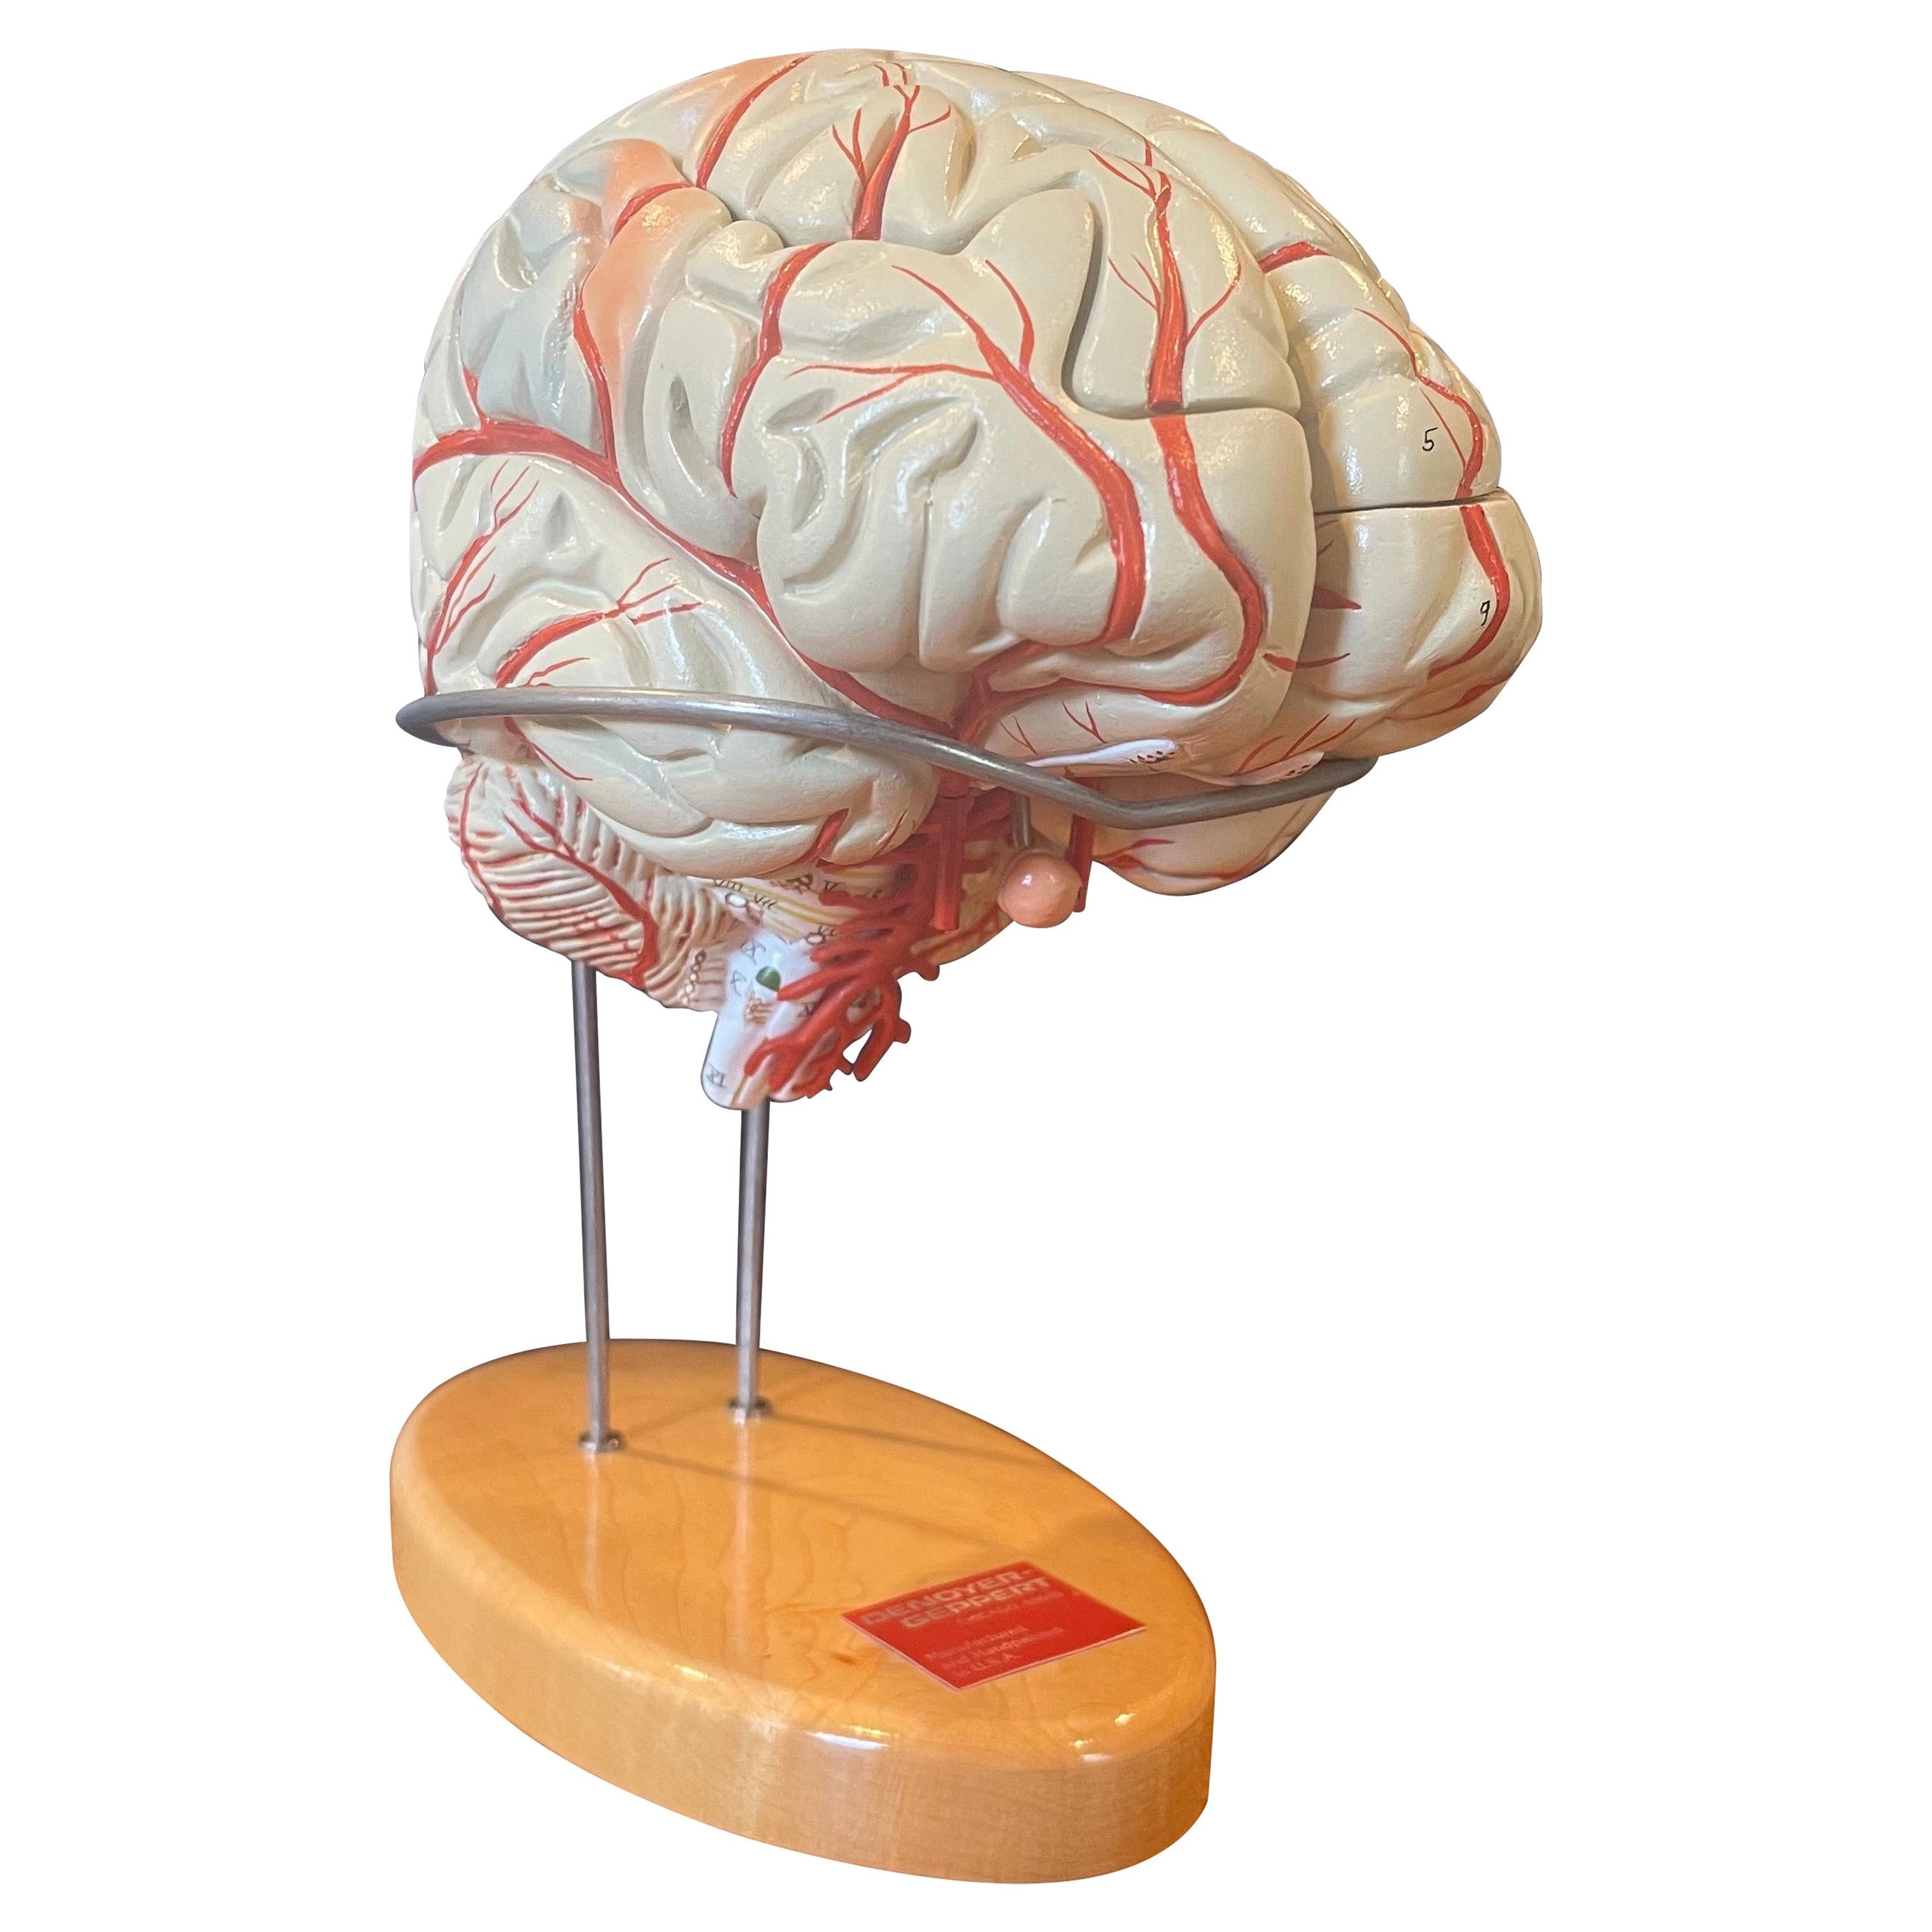 Modèle réduit d'un cerveau vintage peint à la main par Denoyer Geppert